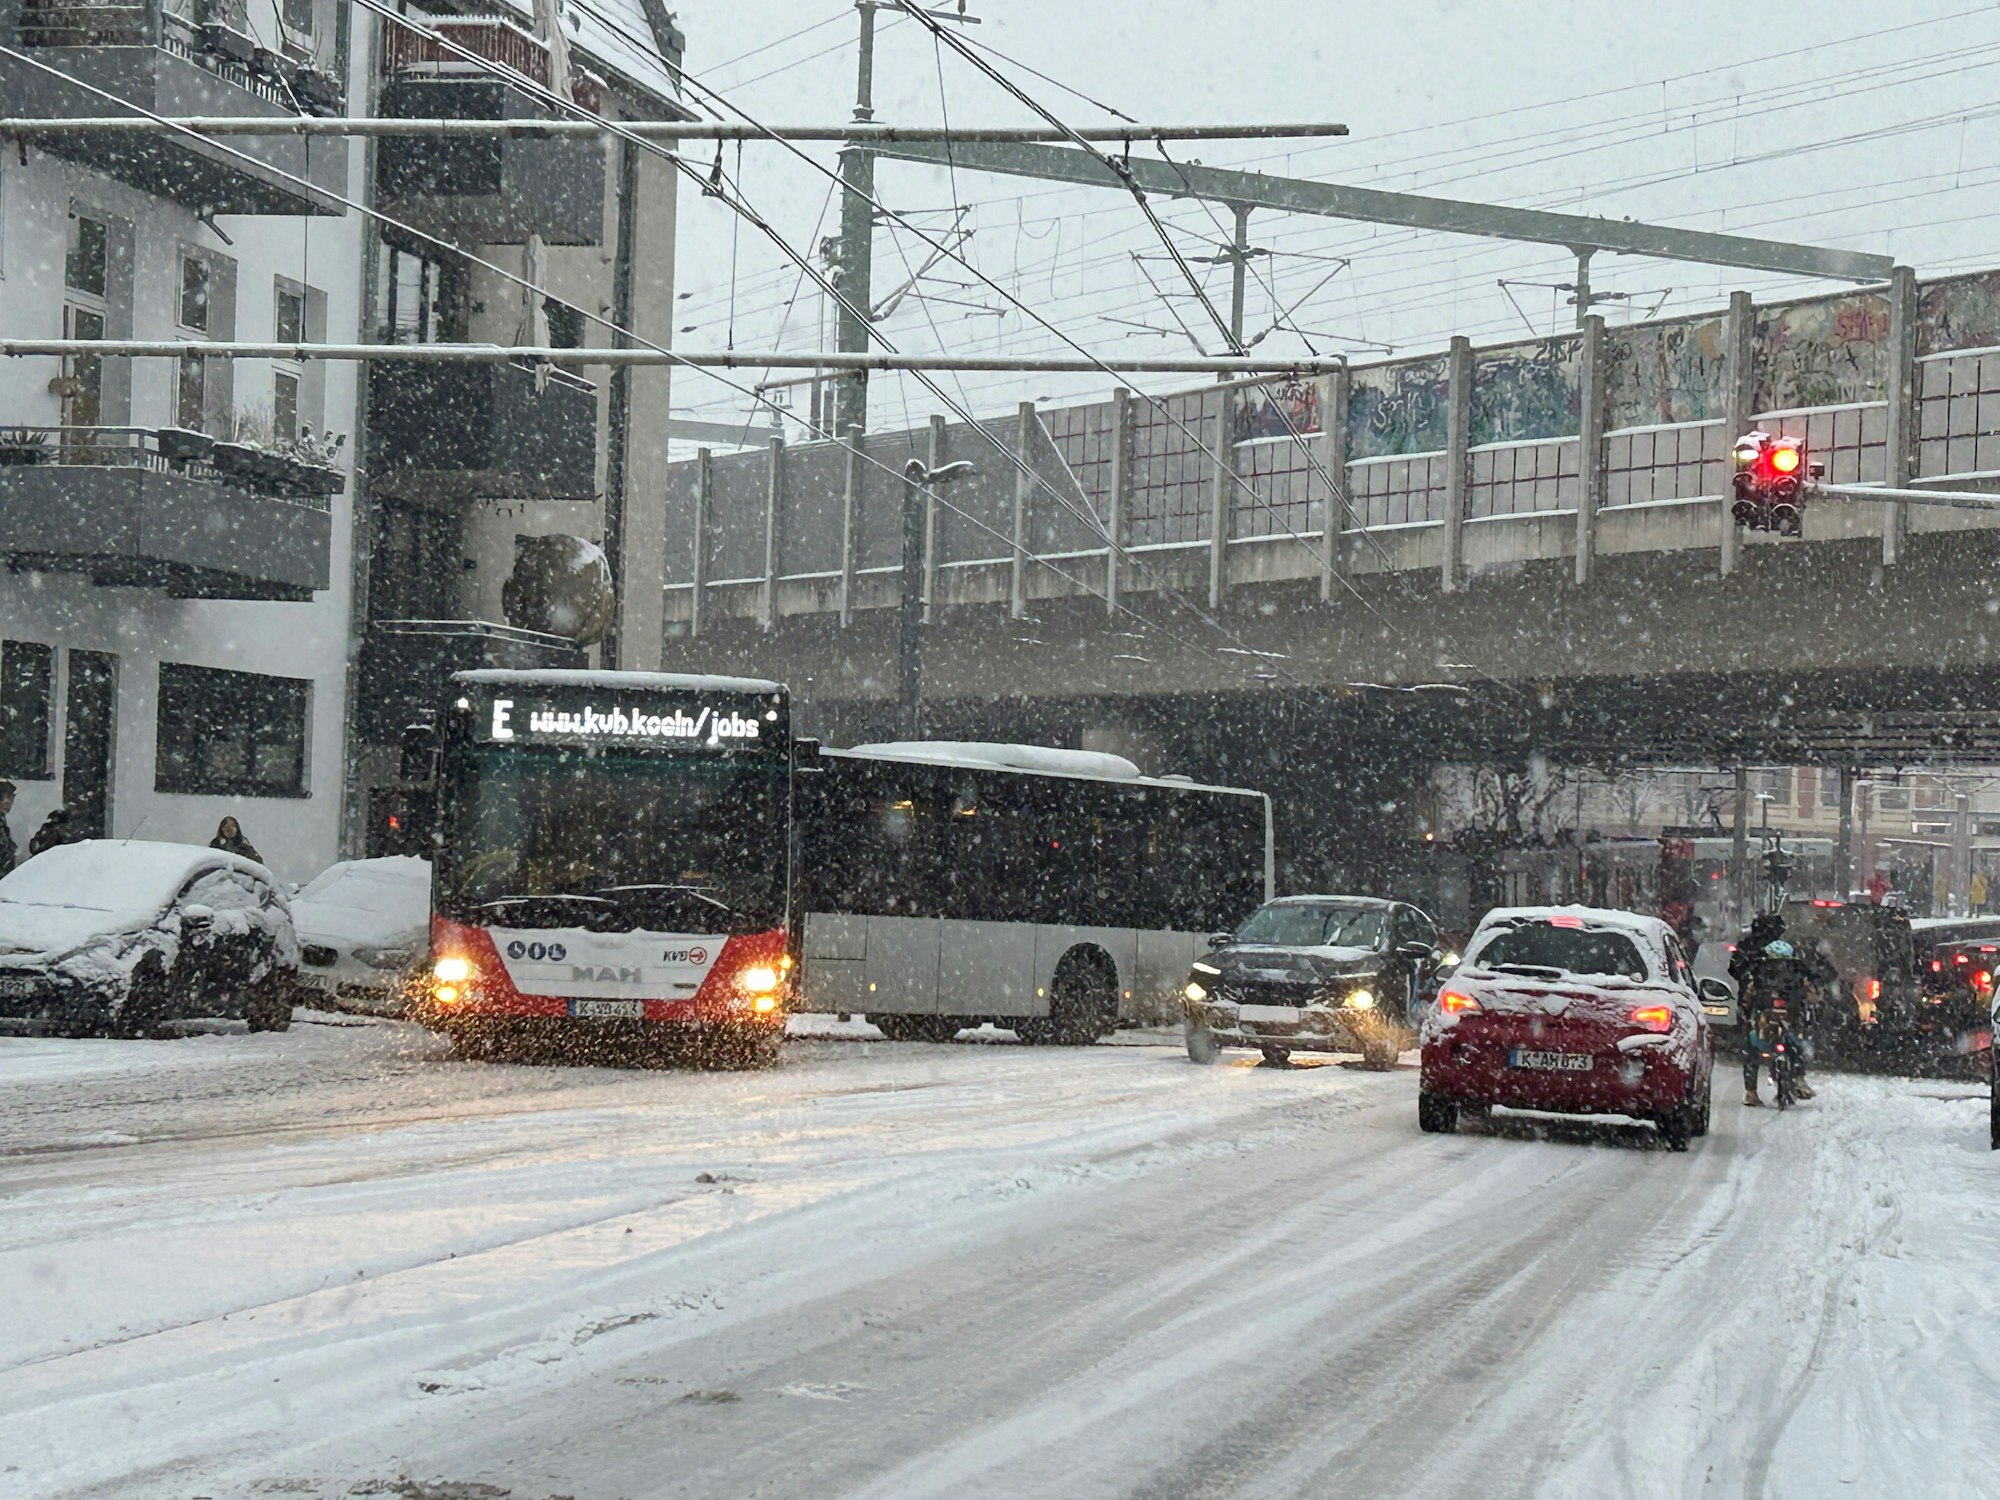 Zu sehen ist eine befahrene Straße, ein Bus steht darauf und es liegt Schnee.